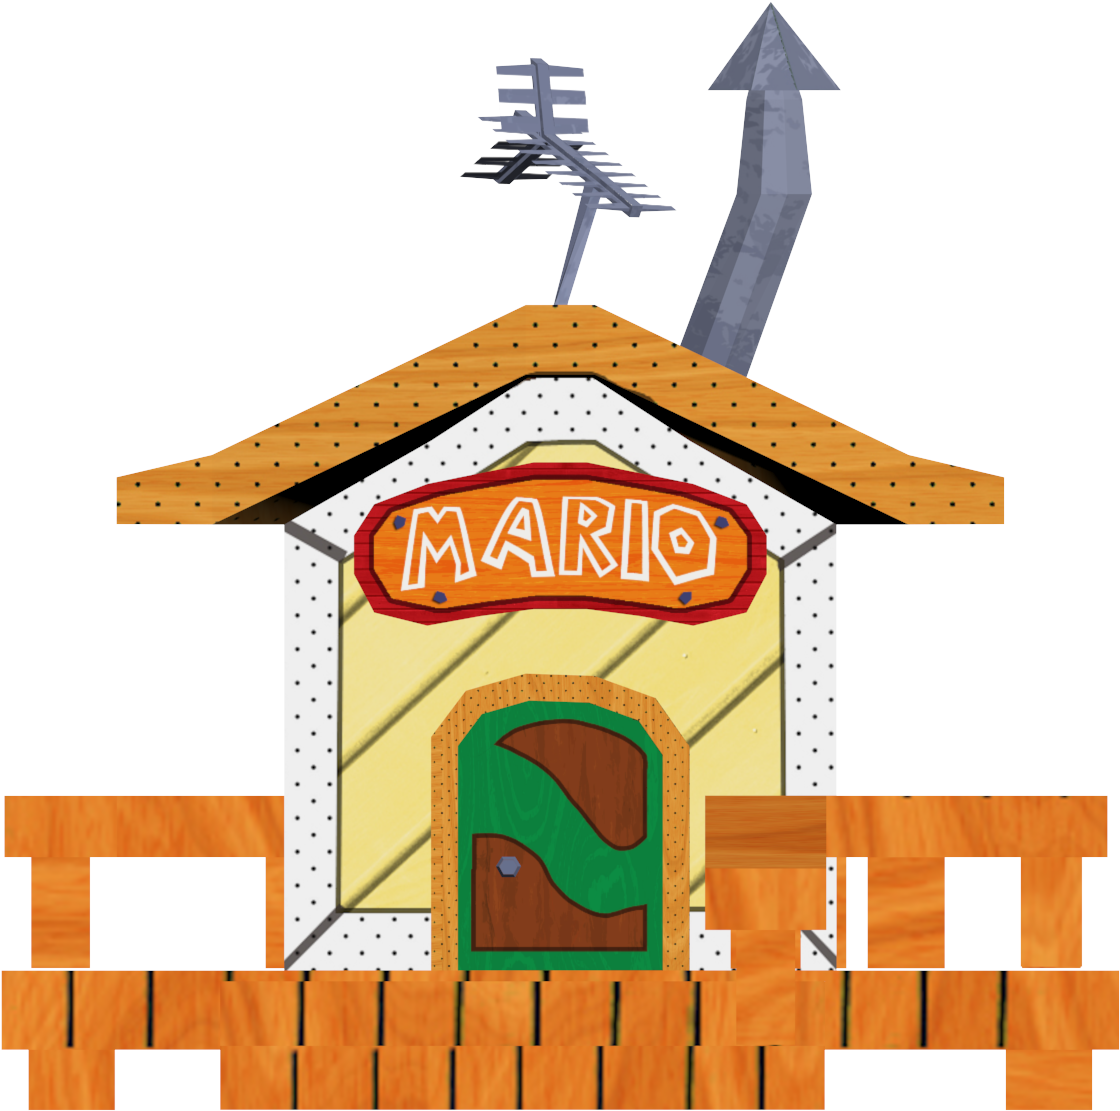 Mario's House Exterior - Mario House Png (1414x1256)